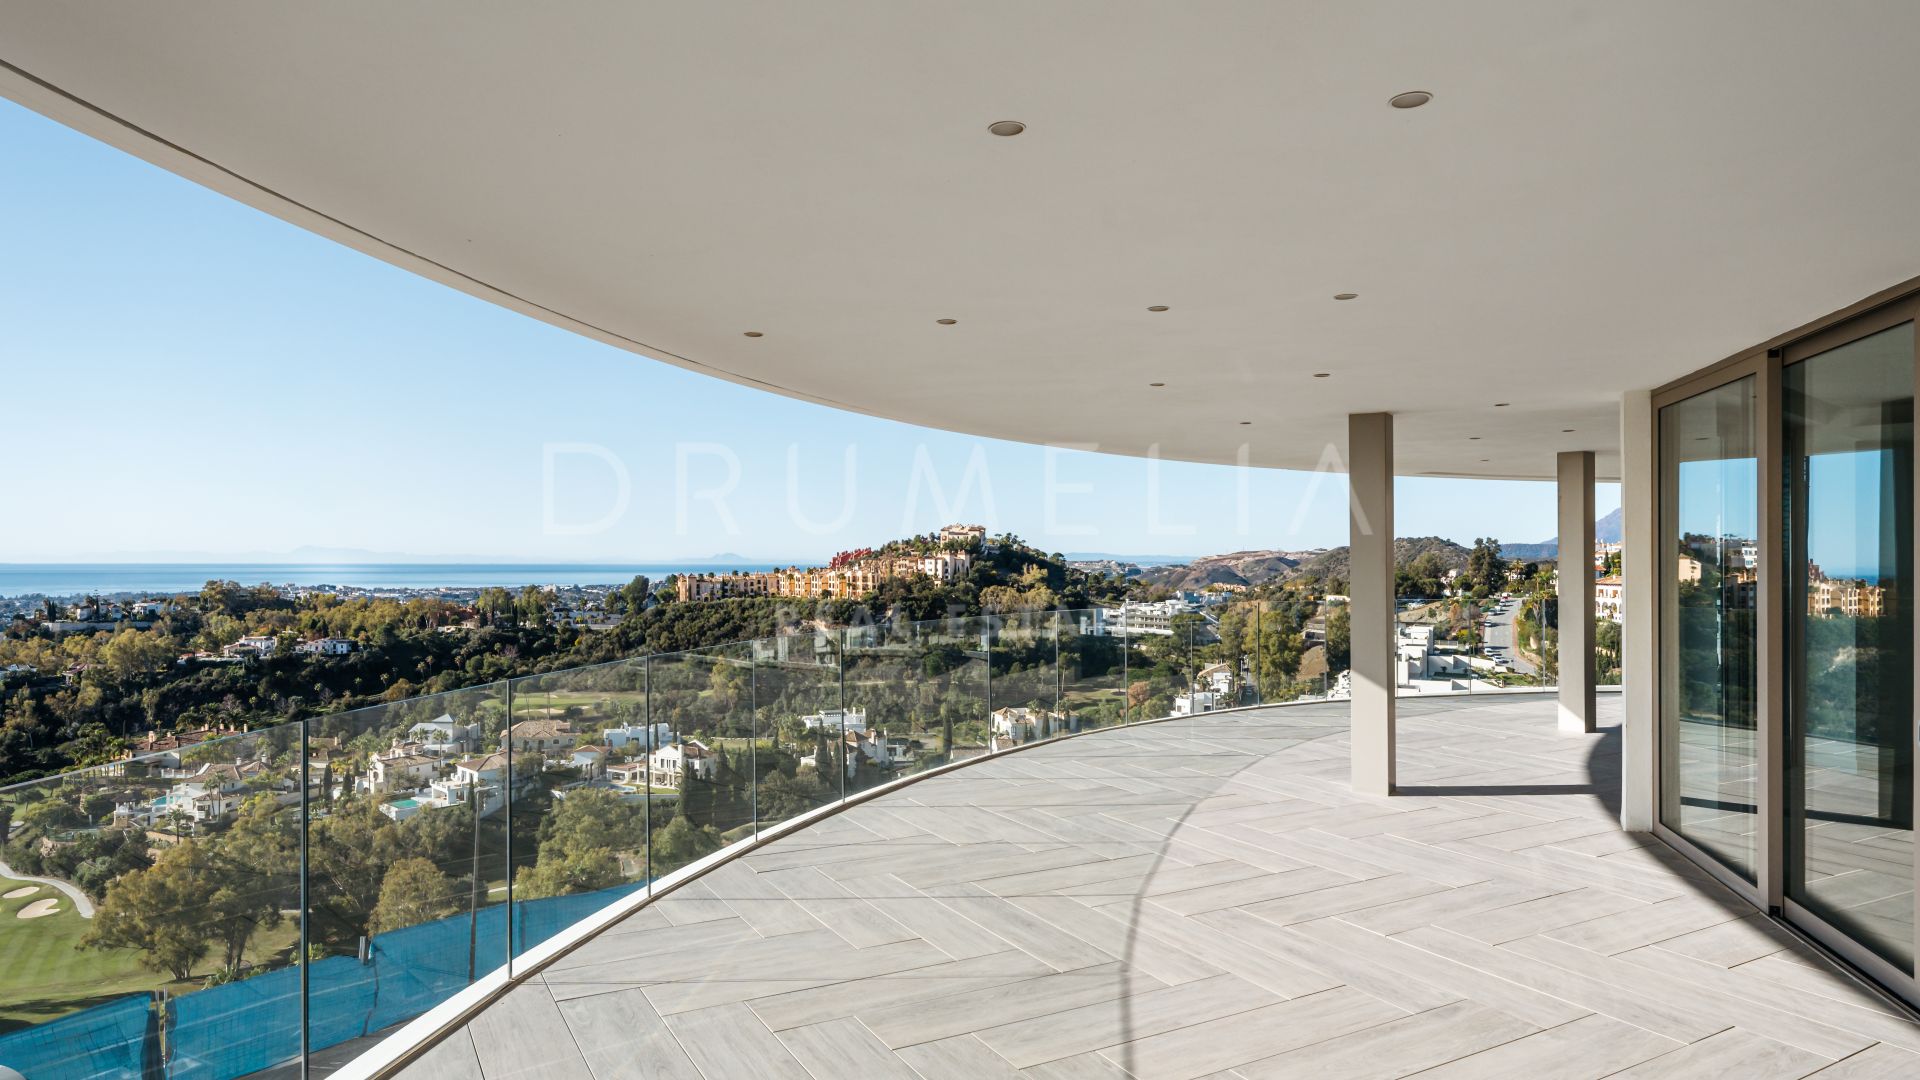 The View Soul - Новая современная элитная квартира с потрясающим панорамным видом на море в Бенахависе